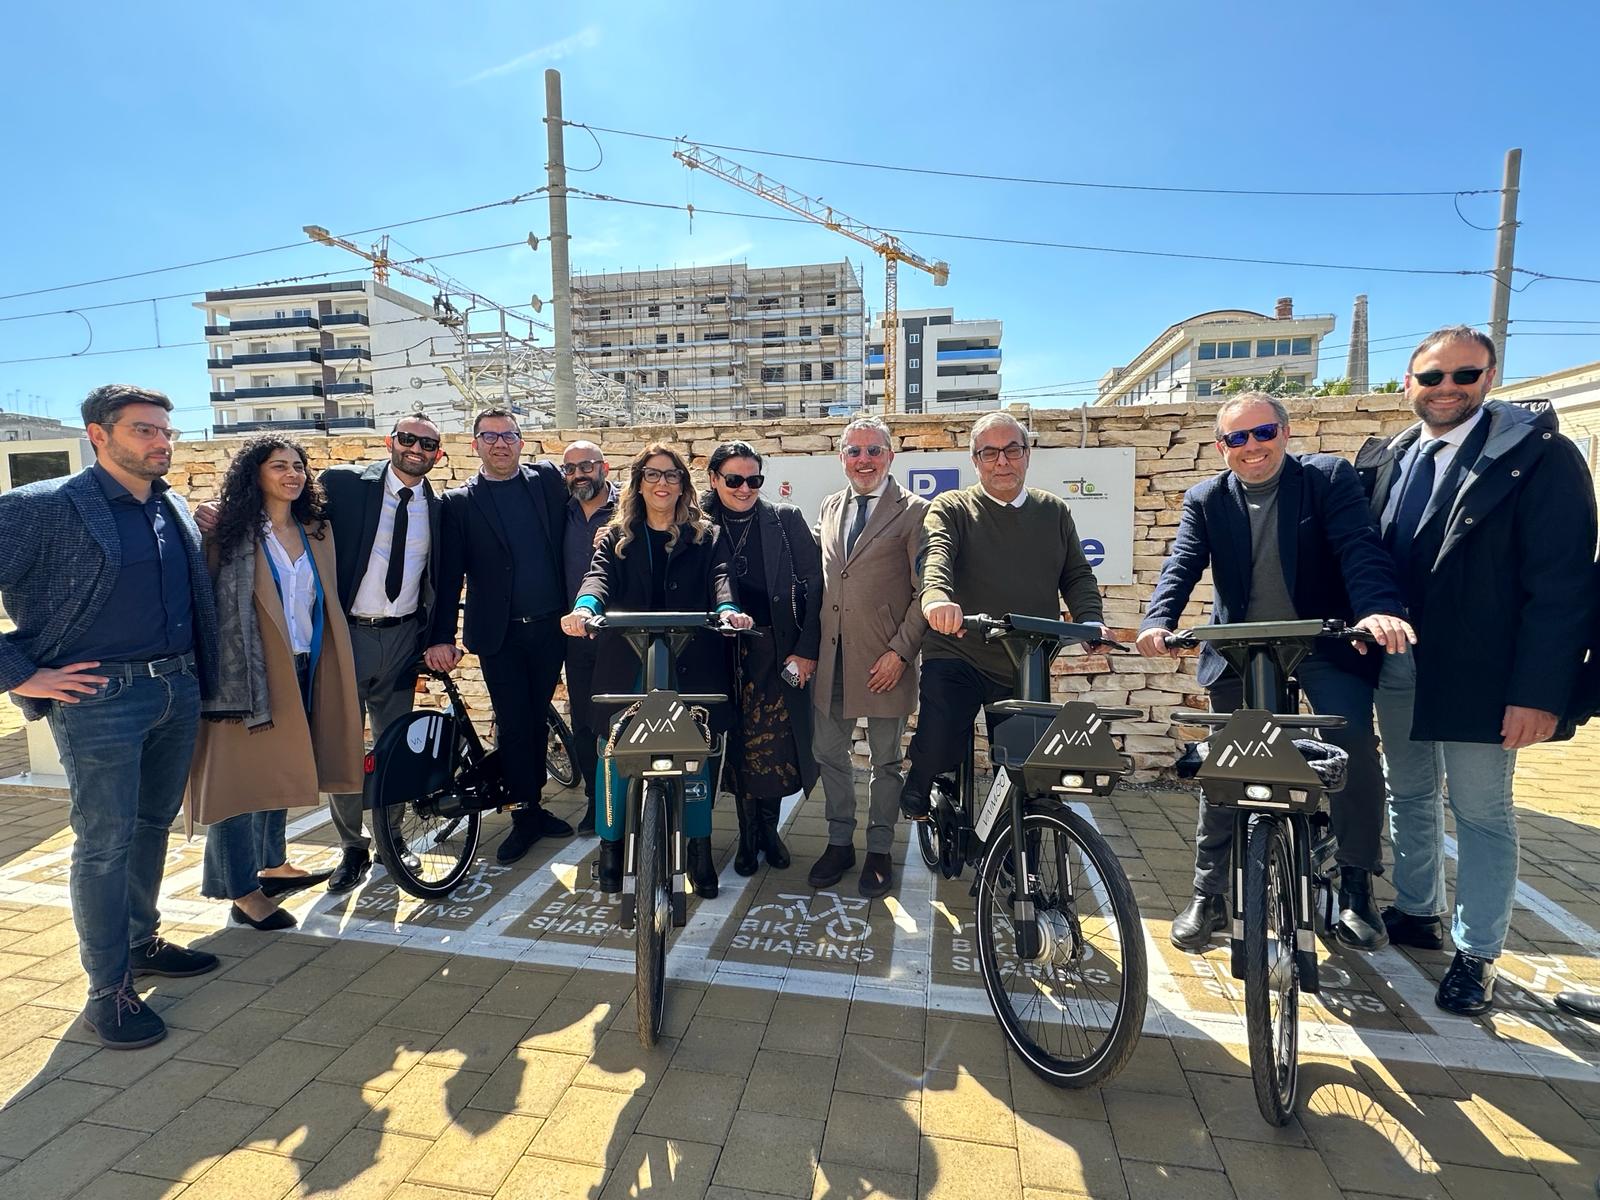 Galleria Mobilità sostenibile, Maurodinoia inaugura il nuovo servizio di bike sharing di Molfetta finanziato dalla Regione - Diapositiva 1 di 4